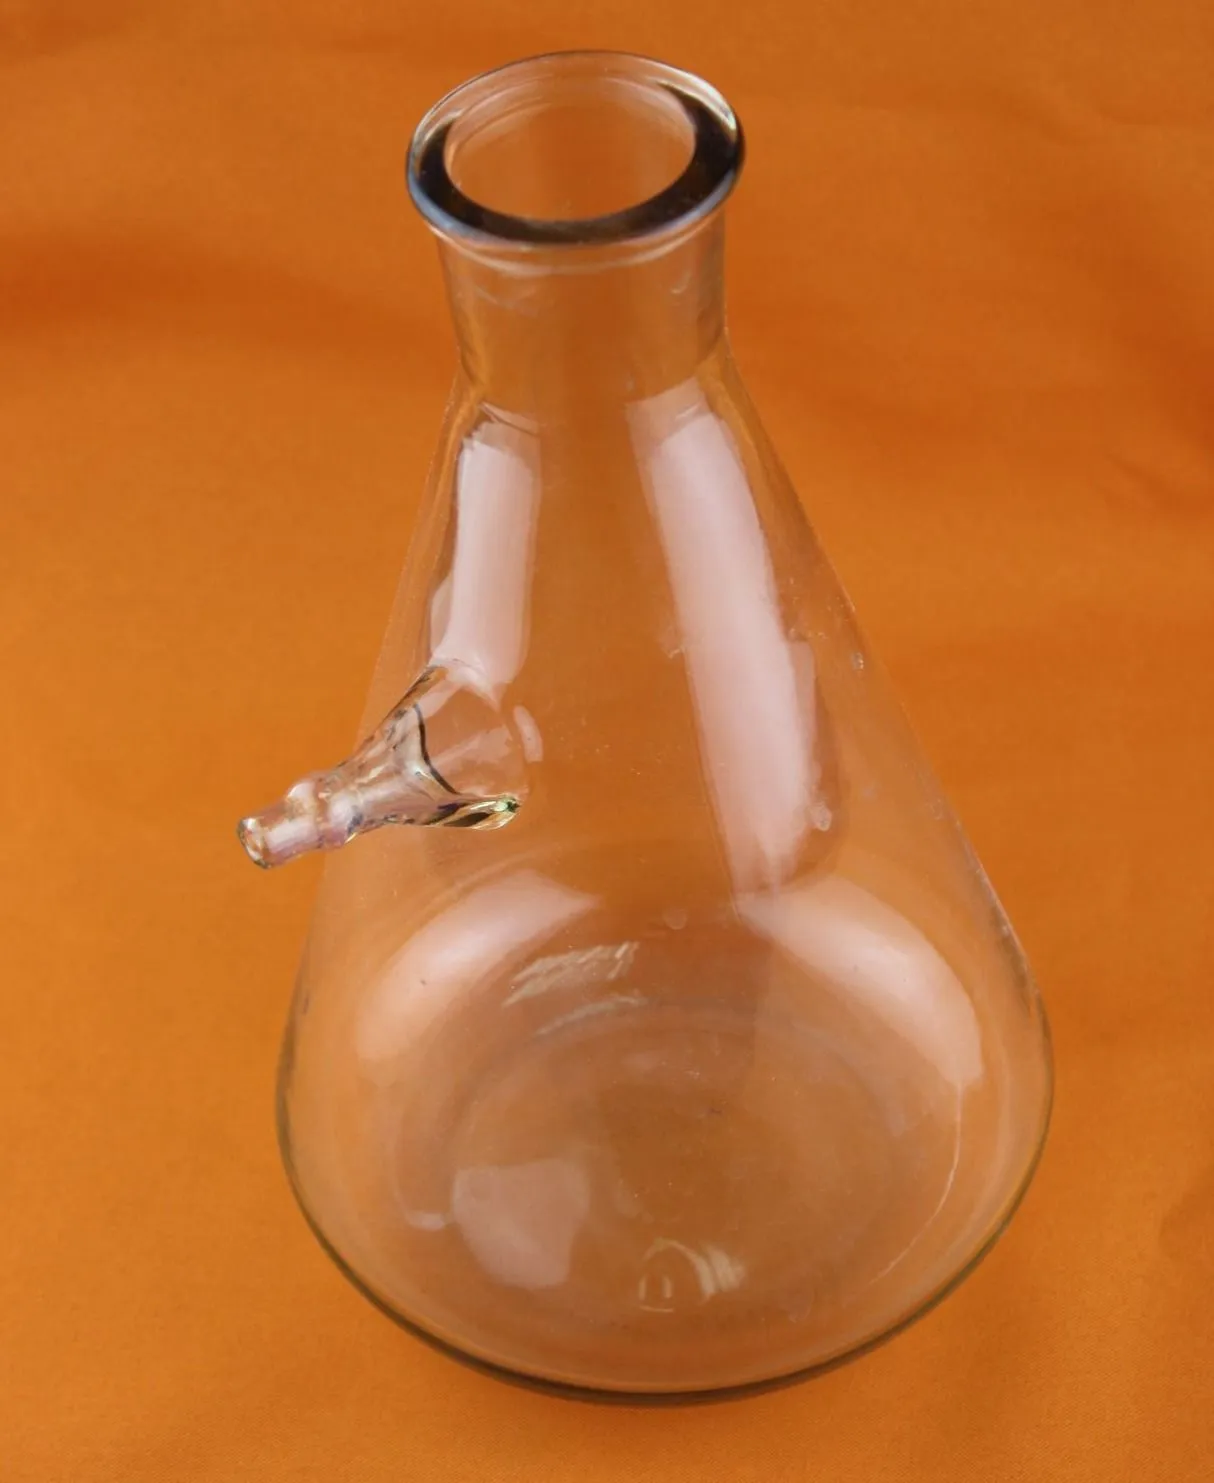 Колба 500 мл стекло (с дозатором на 10 мл для отмеривания жидкости)#4